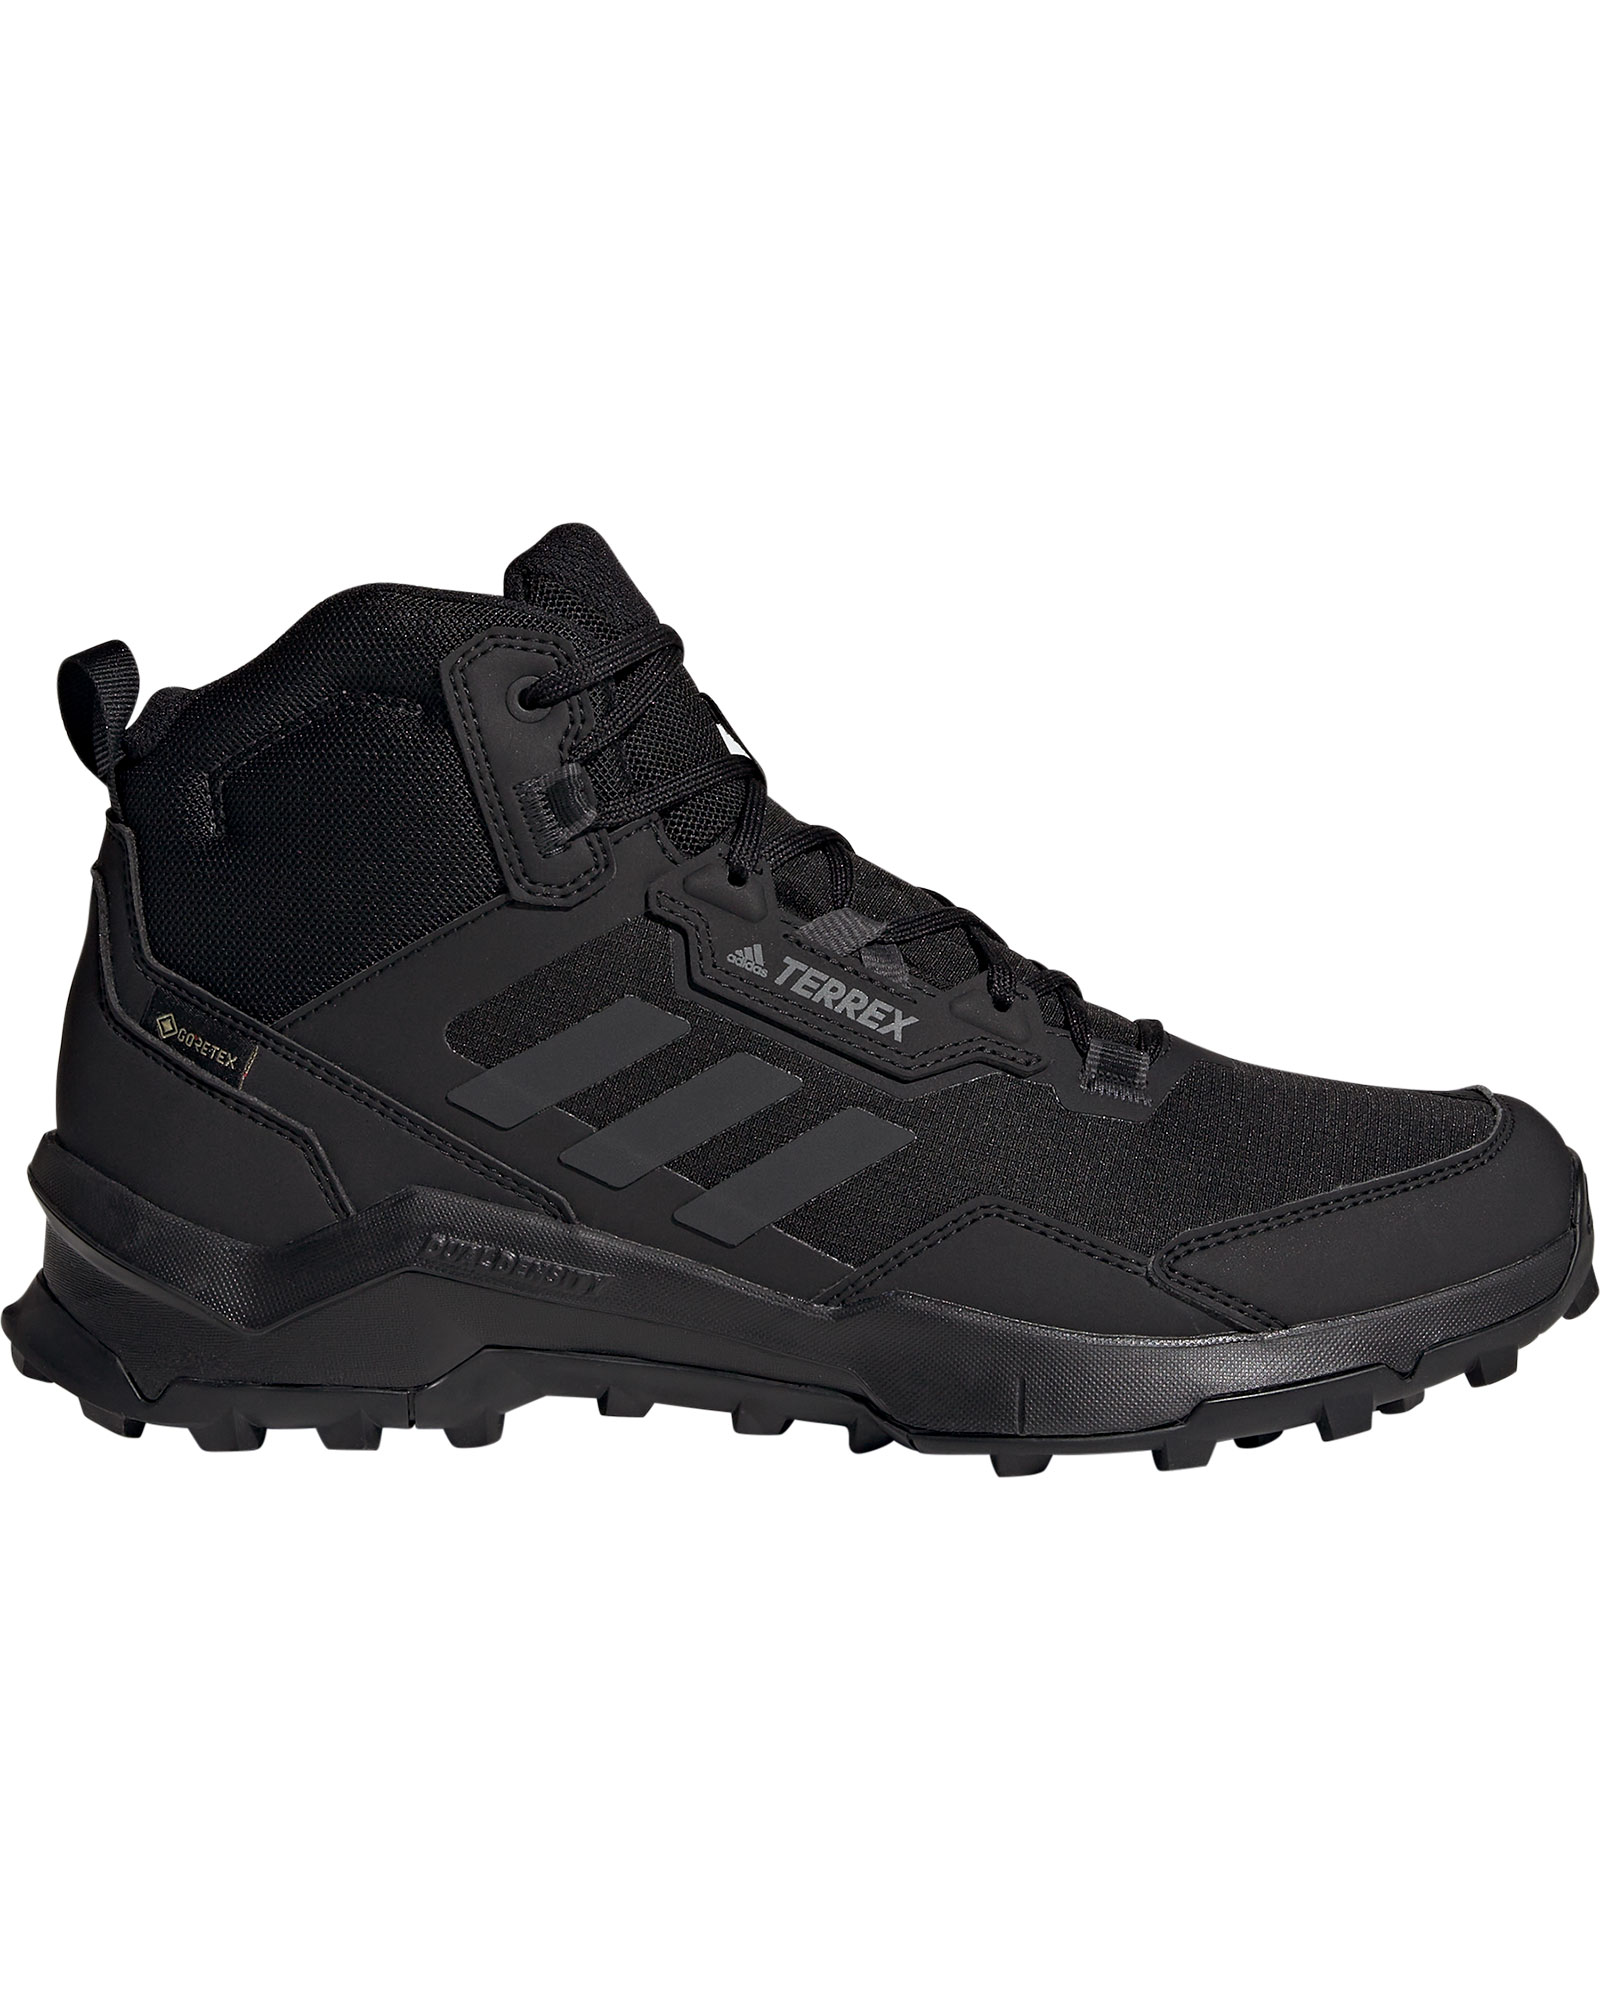 adidas TERREX AX4 Mid GORE TEX Men’s Boots - Core Black/Carbon/Grey Four UK 7.5